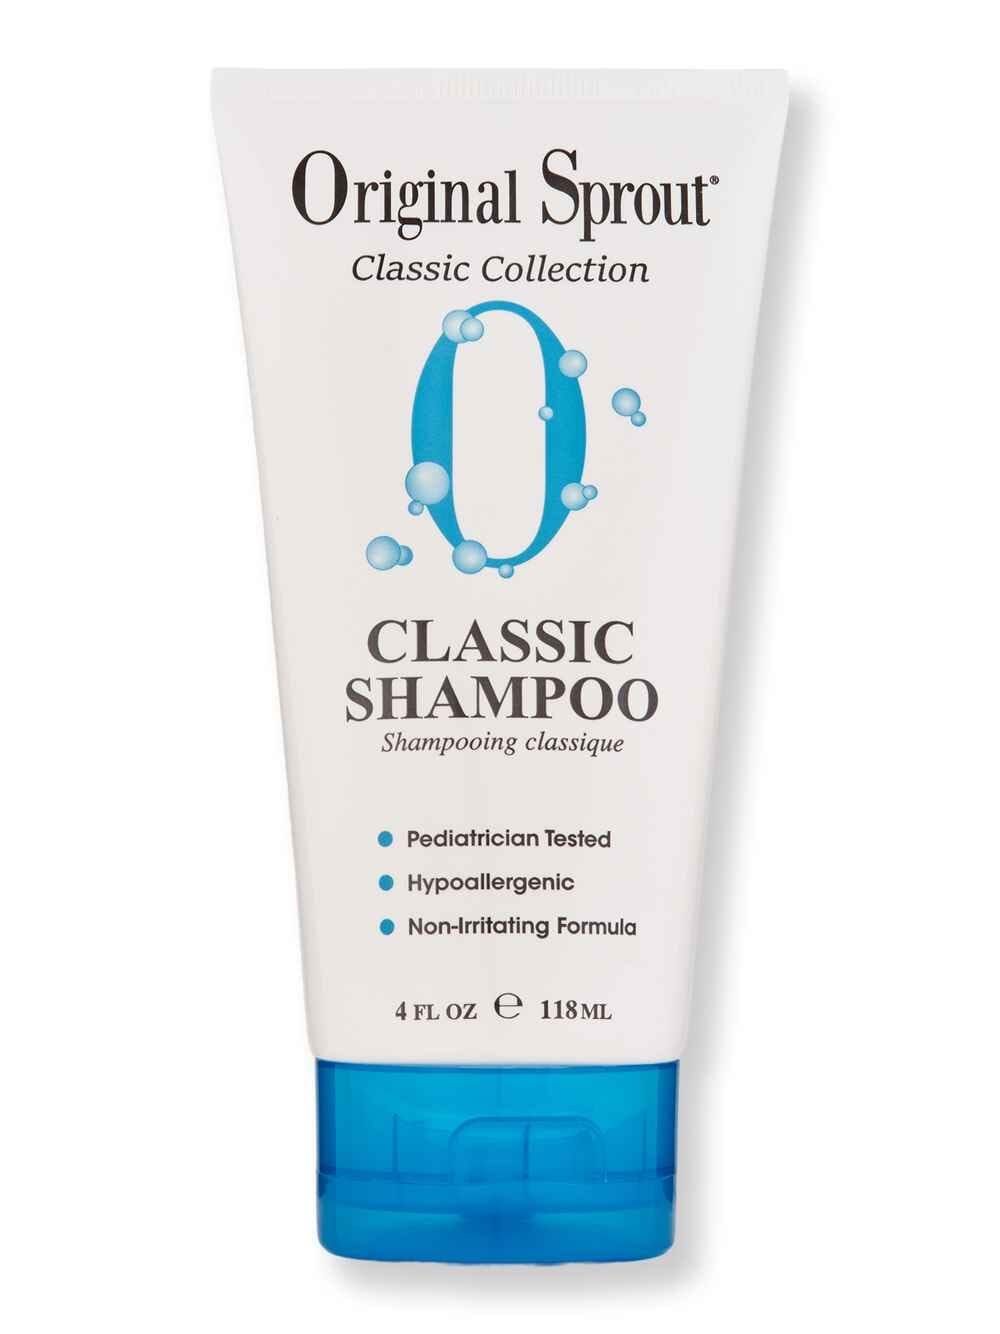 Original Sprout Original Sprout Natural Shampoo 4 oz Shampoos 